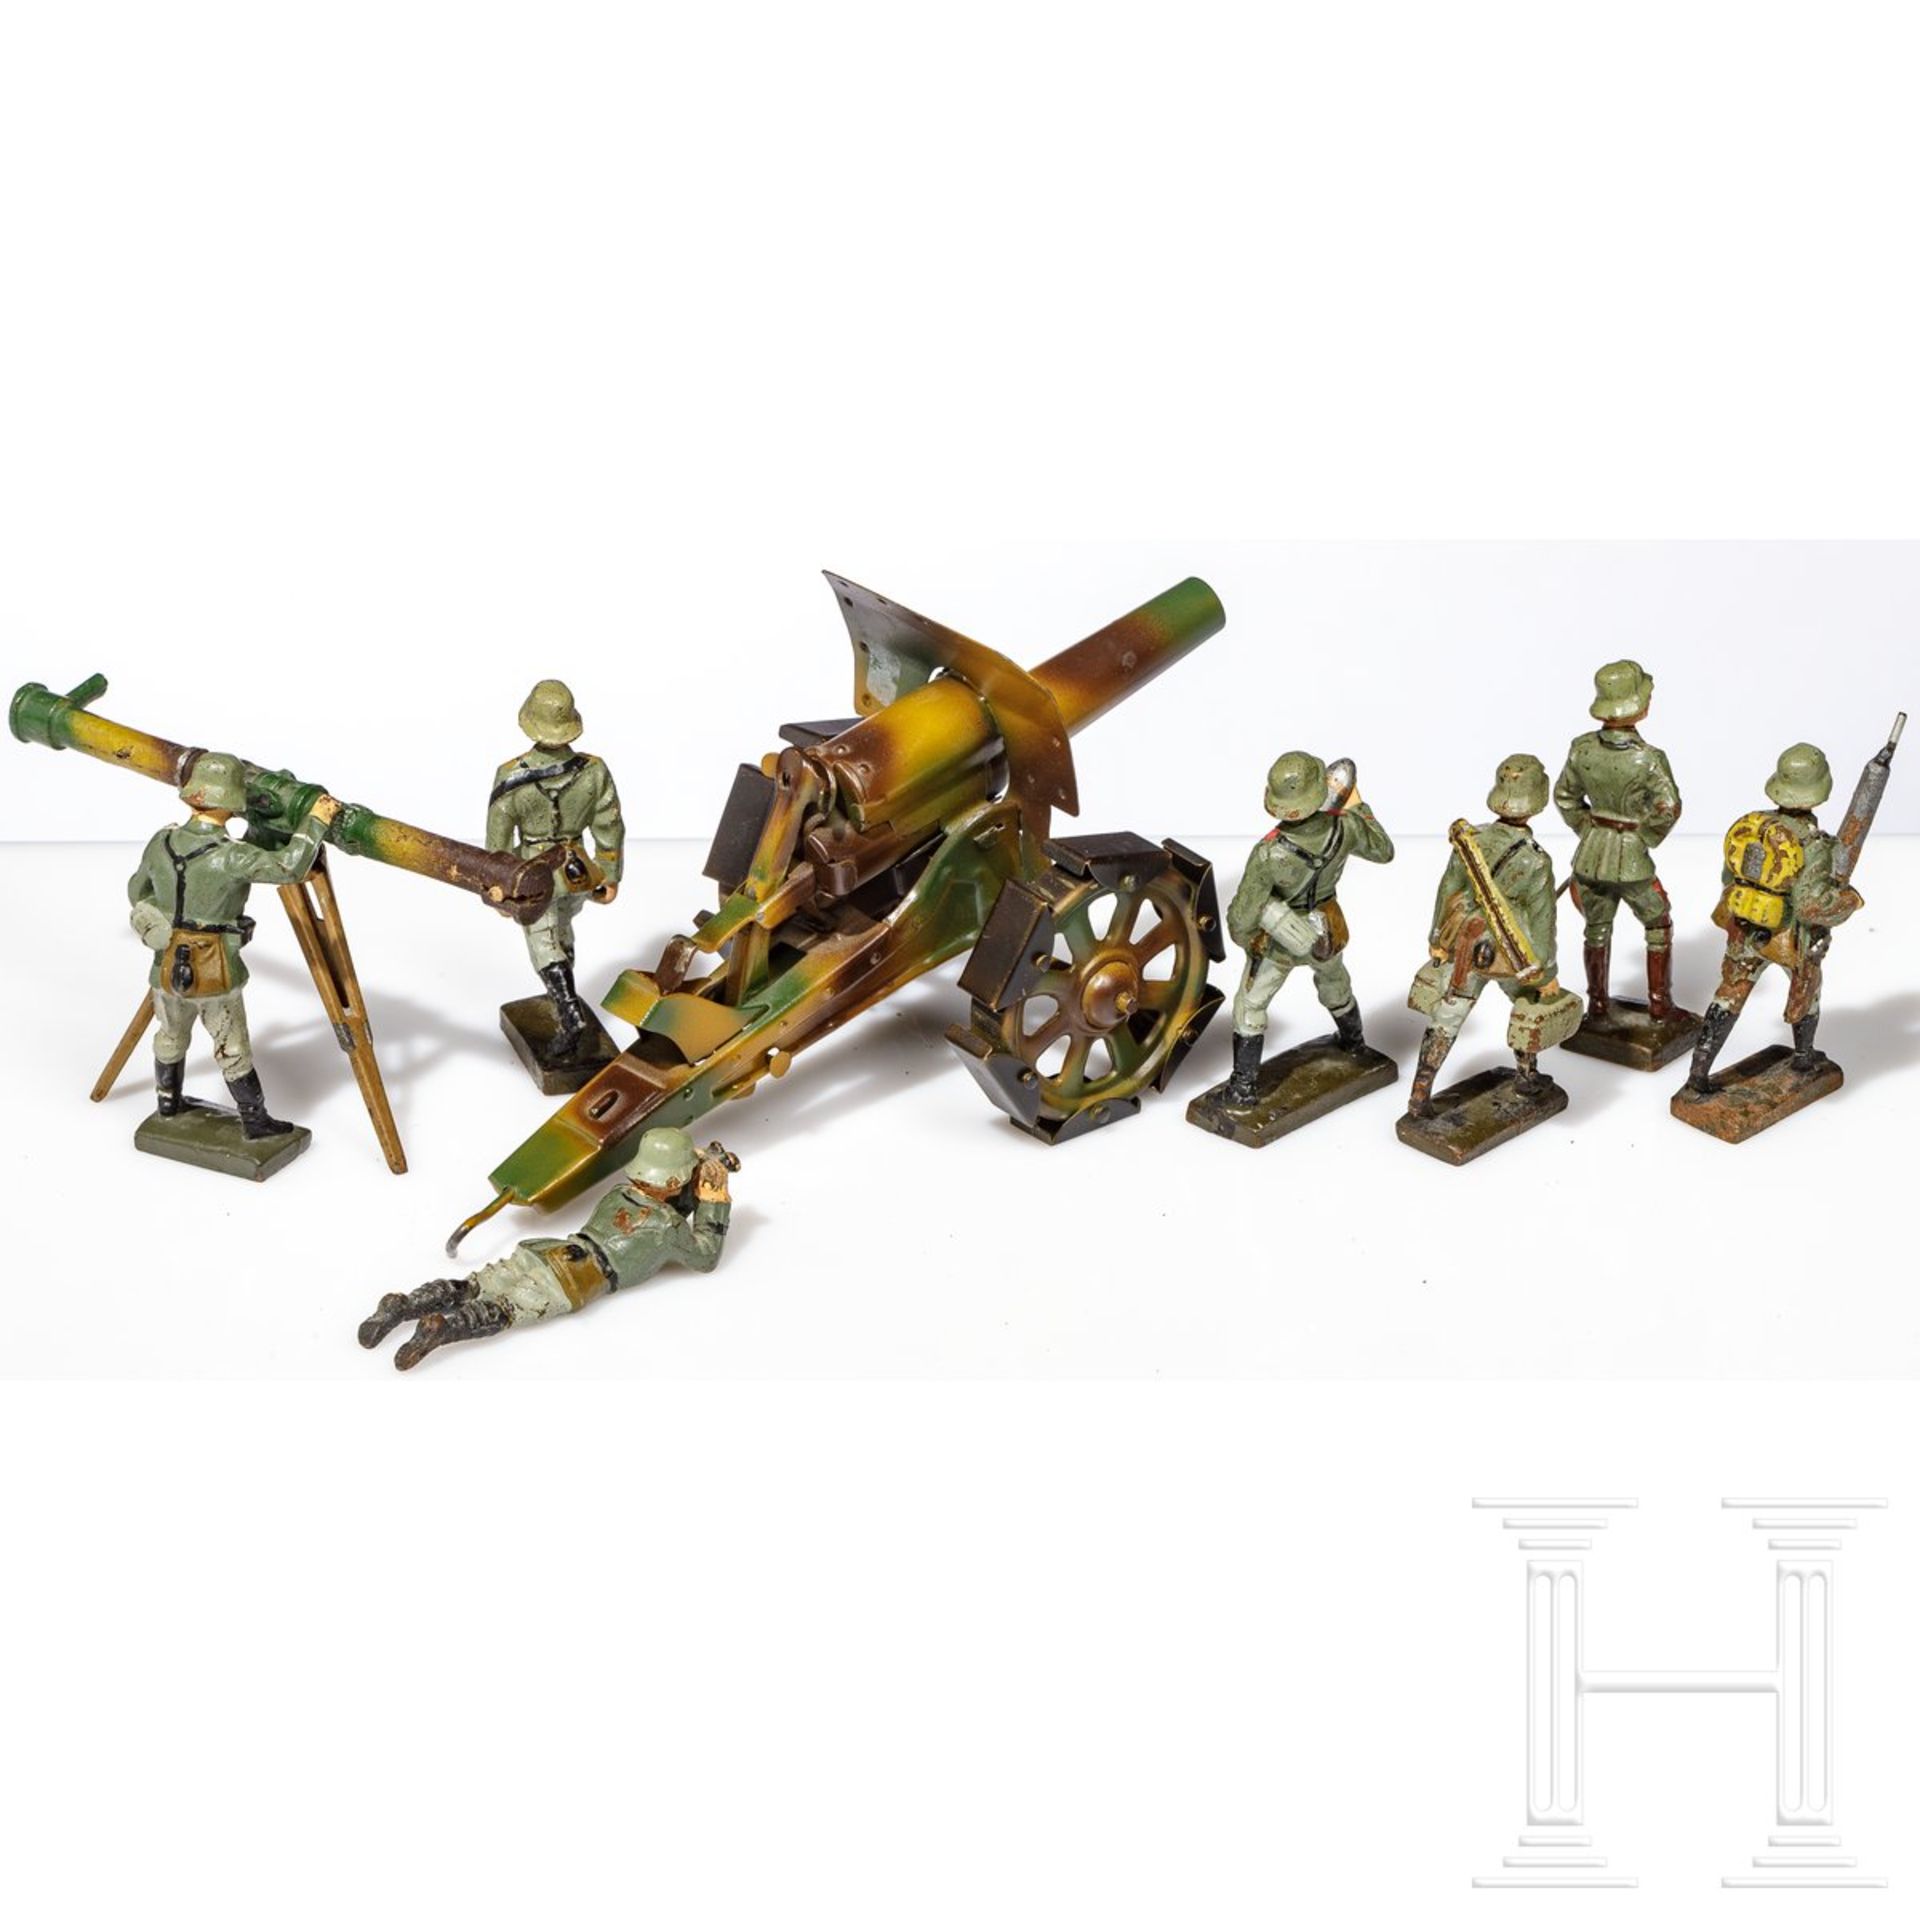 Hausser-Mörser 712 mit Laufschuhen, mimikry, sowie sieben Lineol-Soldaten mit Mann am Entfernungsmes - Bild 2 aus 4